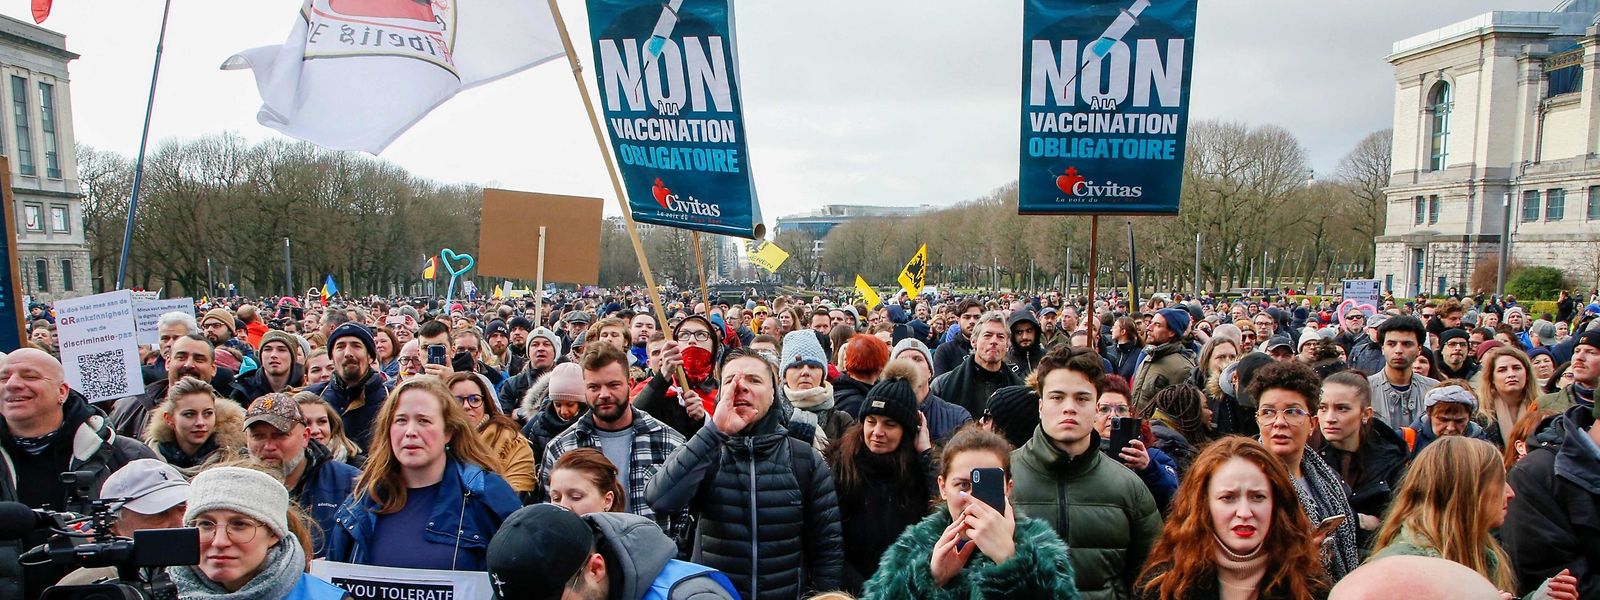 Ce weekend encore, 5.000 personnes ont manifesté leur opposition aux mesures sanitaires dans les rues de Bruxelles.